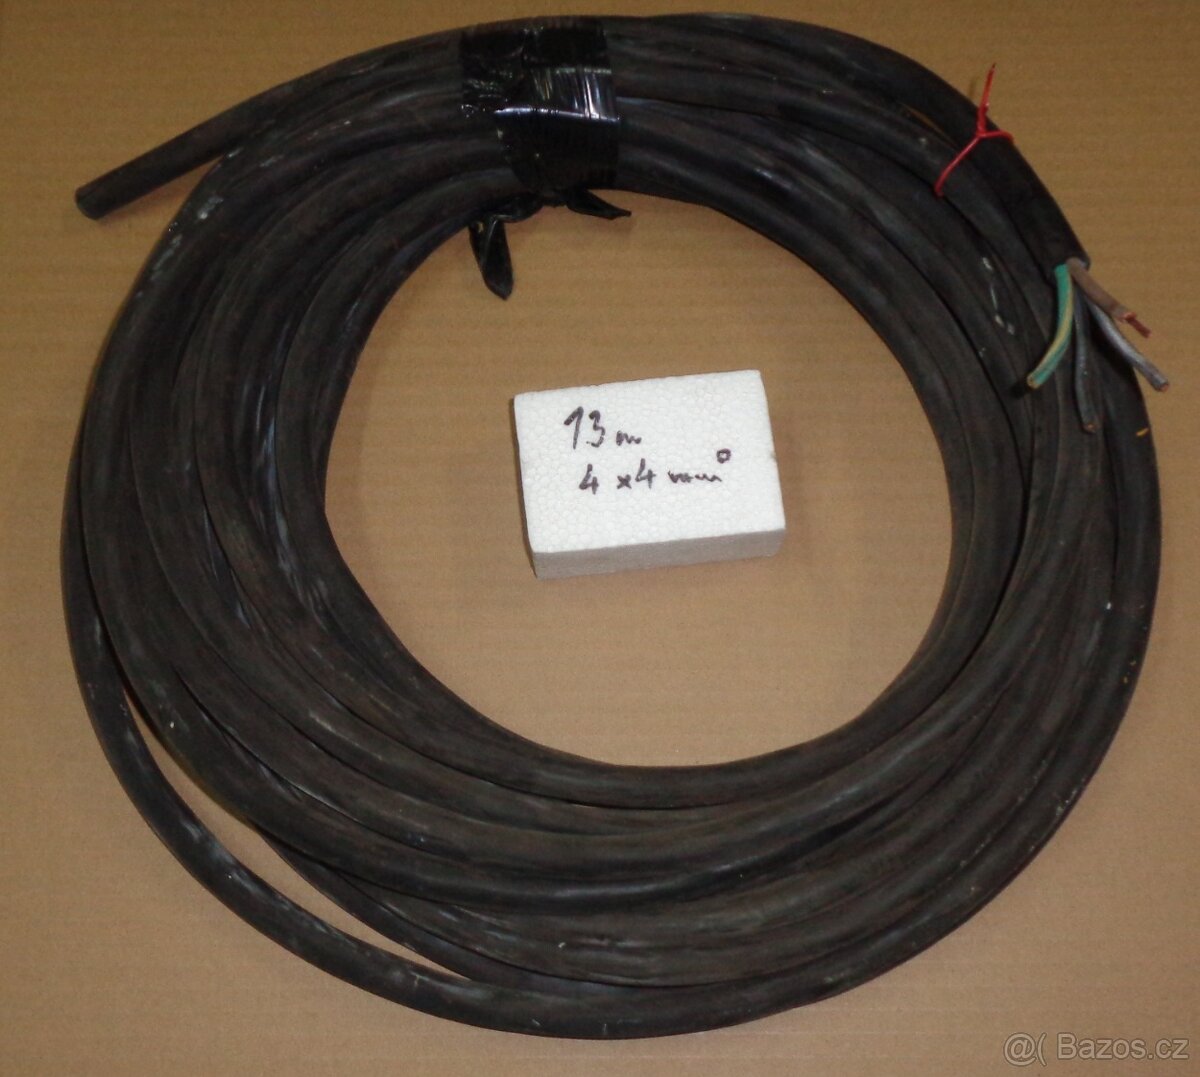 Venkovní gumový kabel 4 x 4 mm/ 13 m